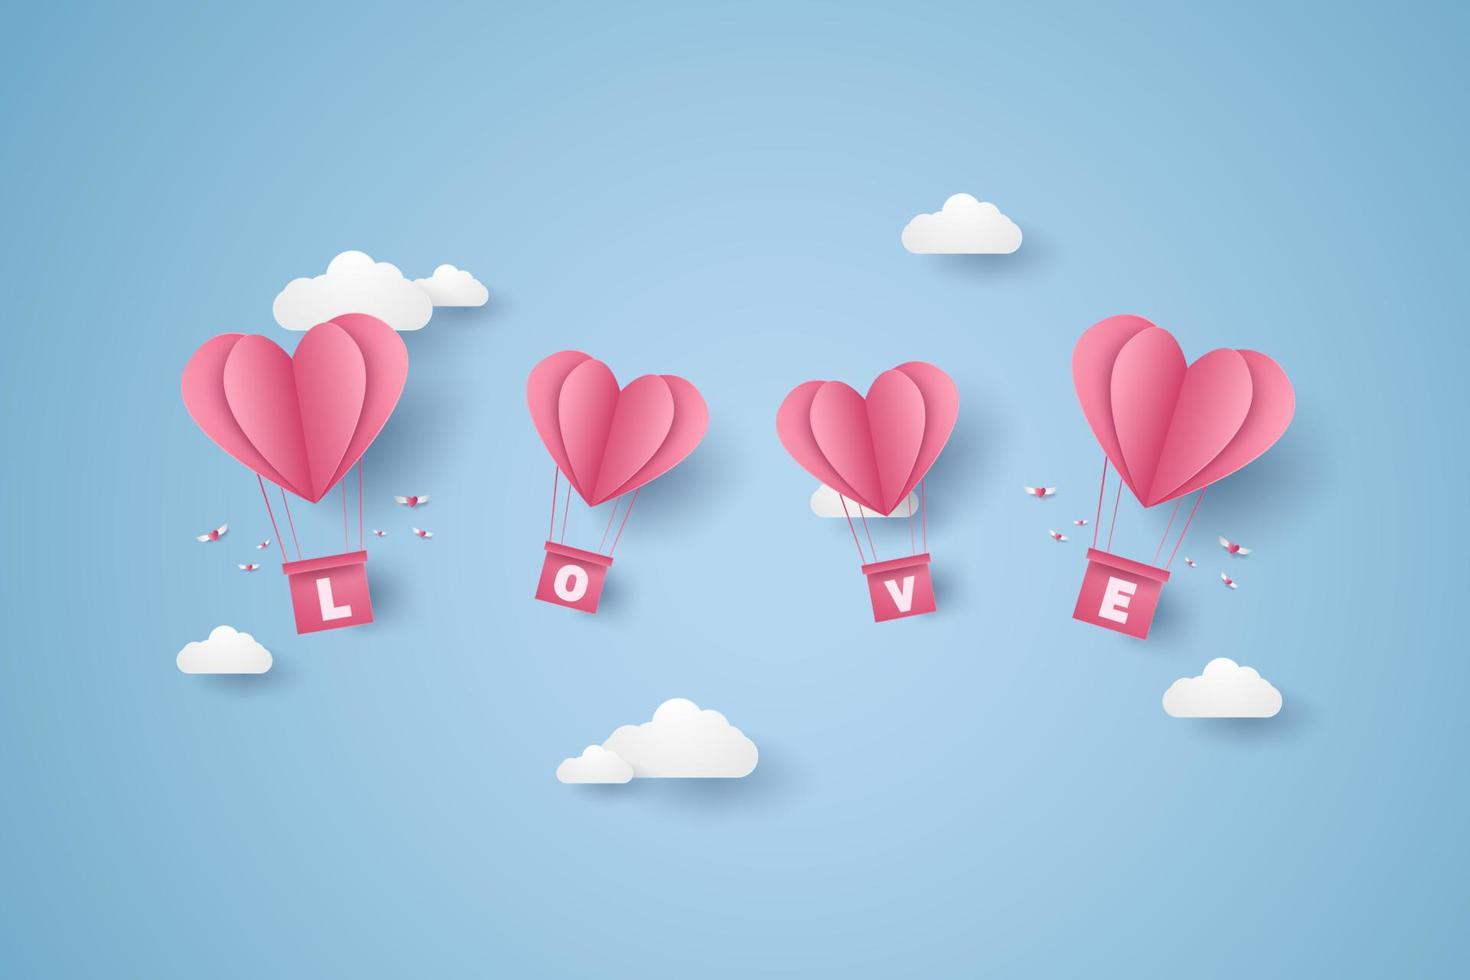 giorno di san valentino, illustrazione dell'amore, mongolfiere a cuore rosa che volano nel cielo blu, stile di arte della carta vettore